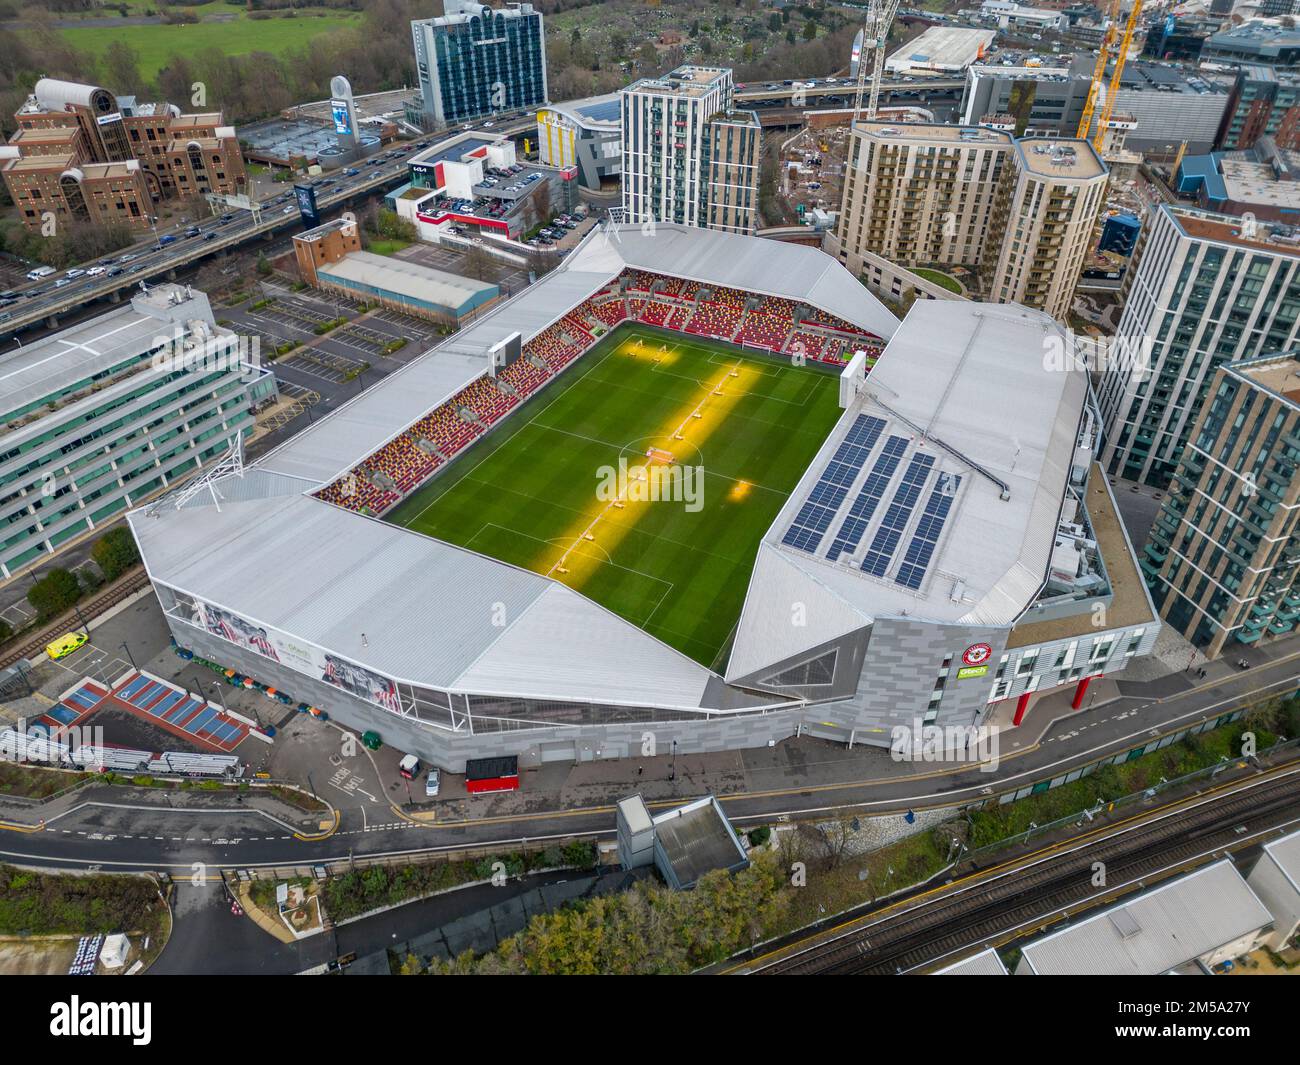 Vista aérea del Gtech Community Stadium, sede del equipo de la Premier League inglesa, Brentford Football Club, Londres, Reino Unido. Foto de stock